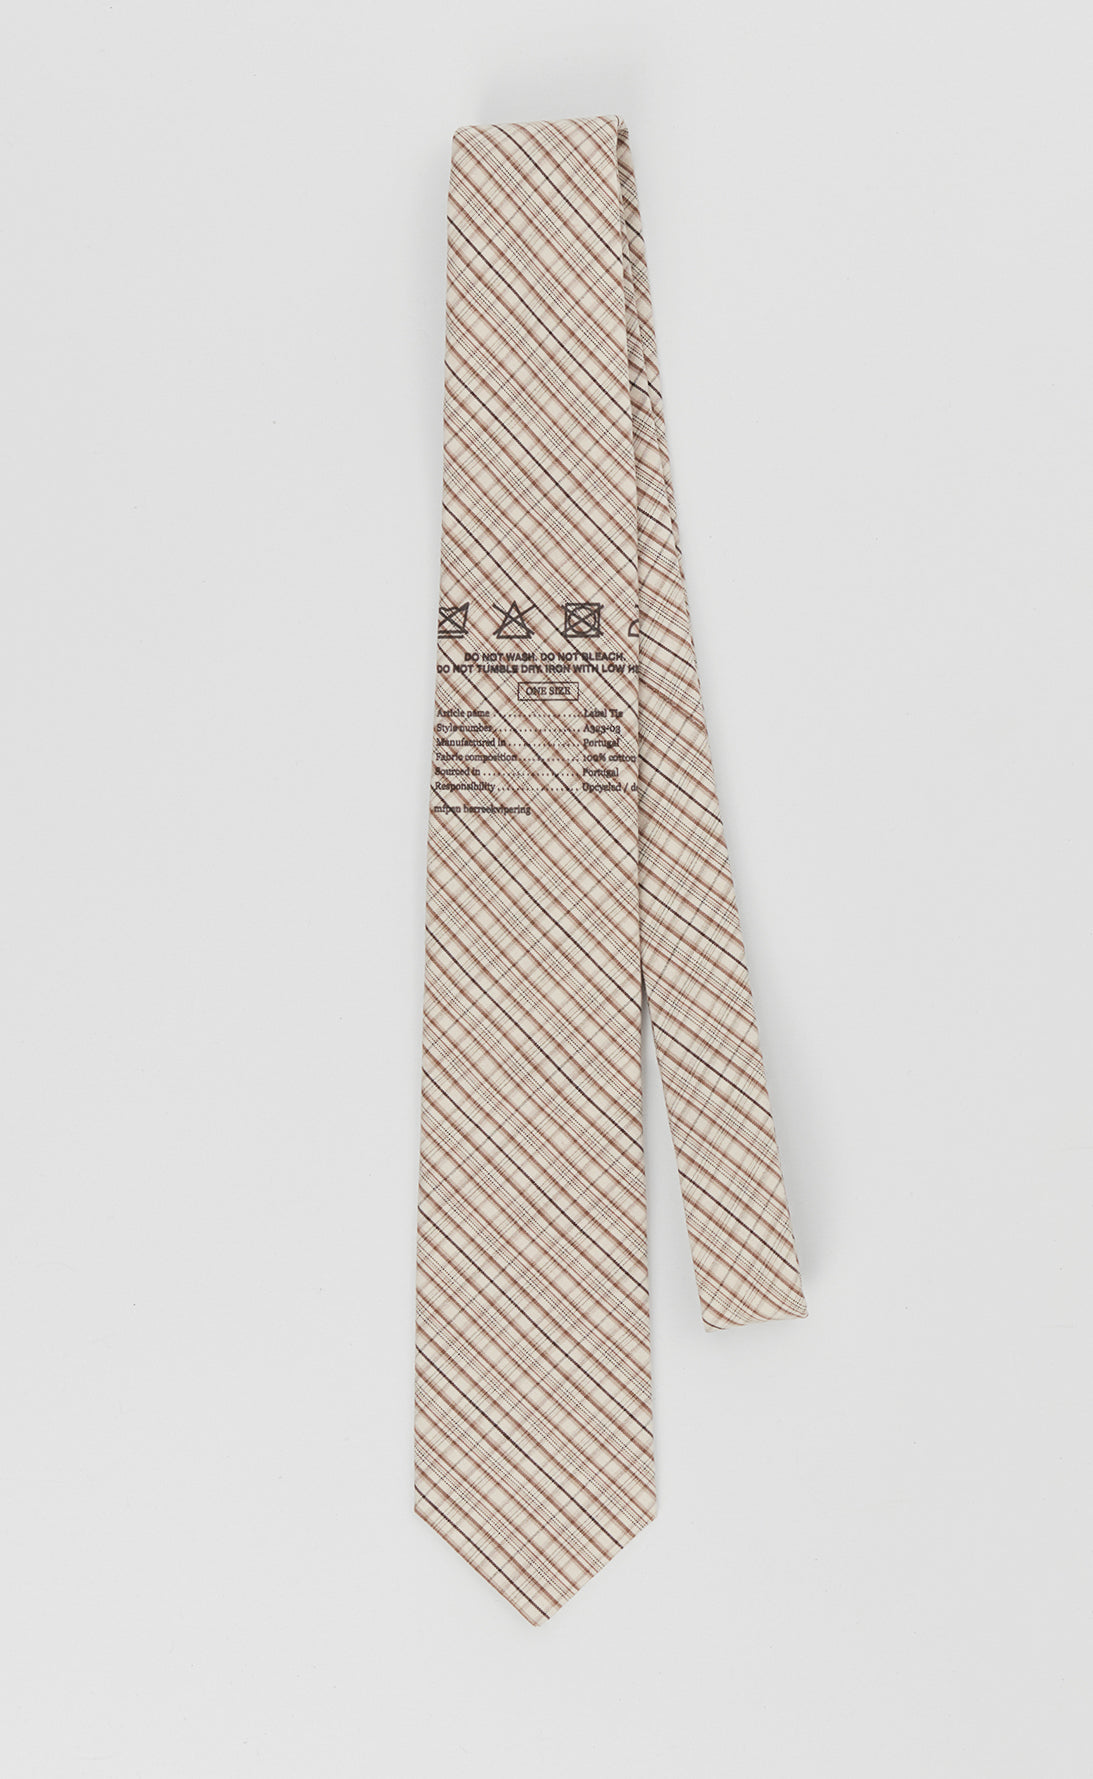 Label Tie - Beige Check